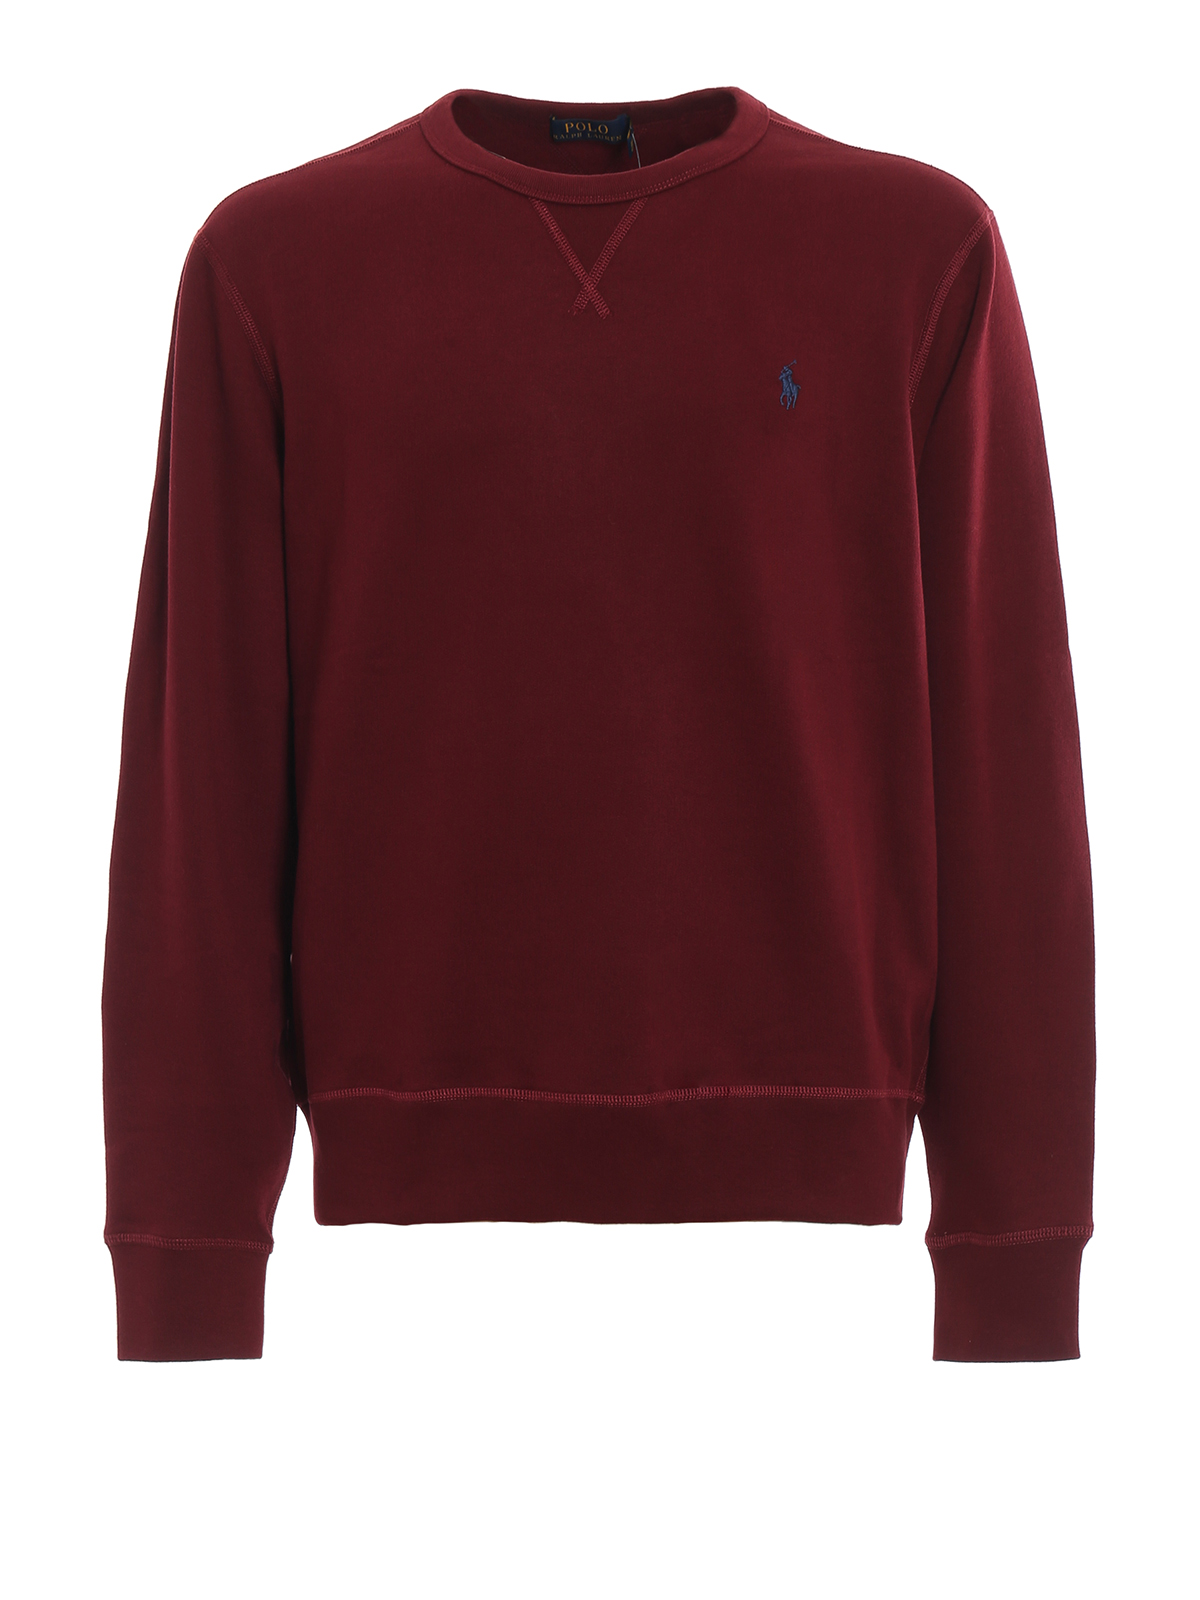 ralph lauren burgundy sweatshirt